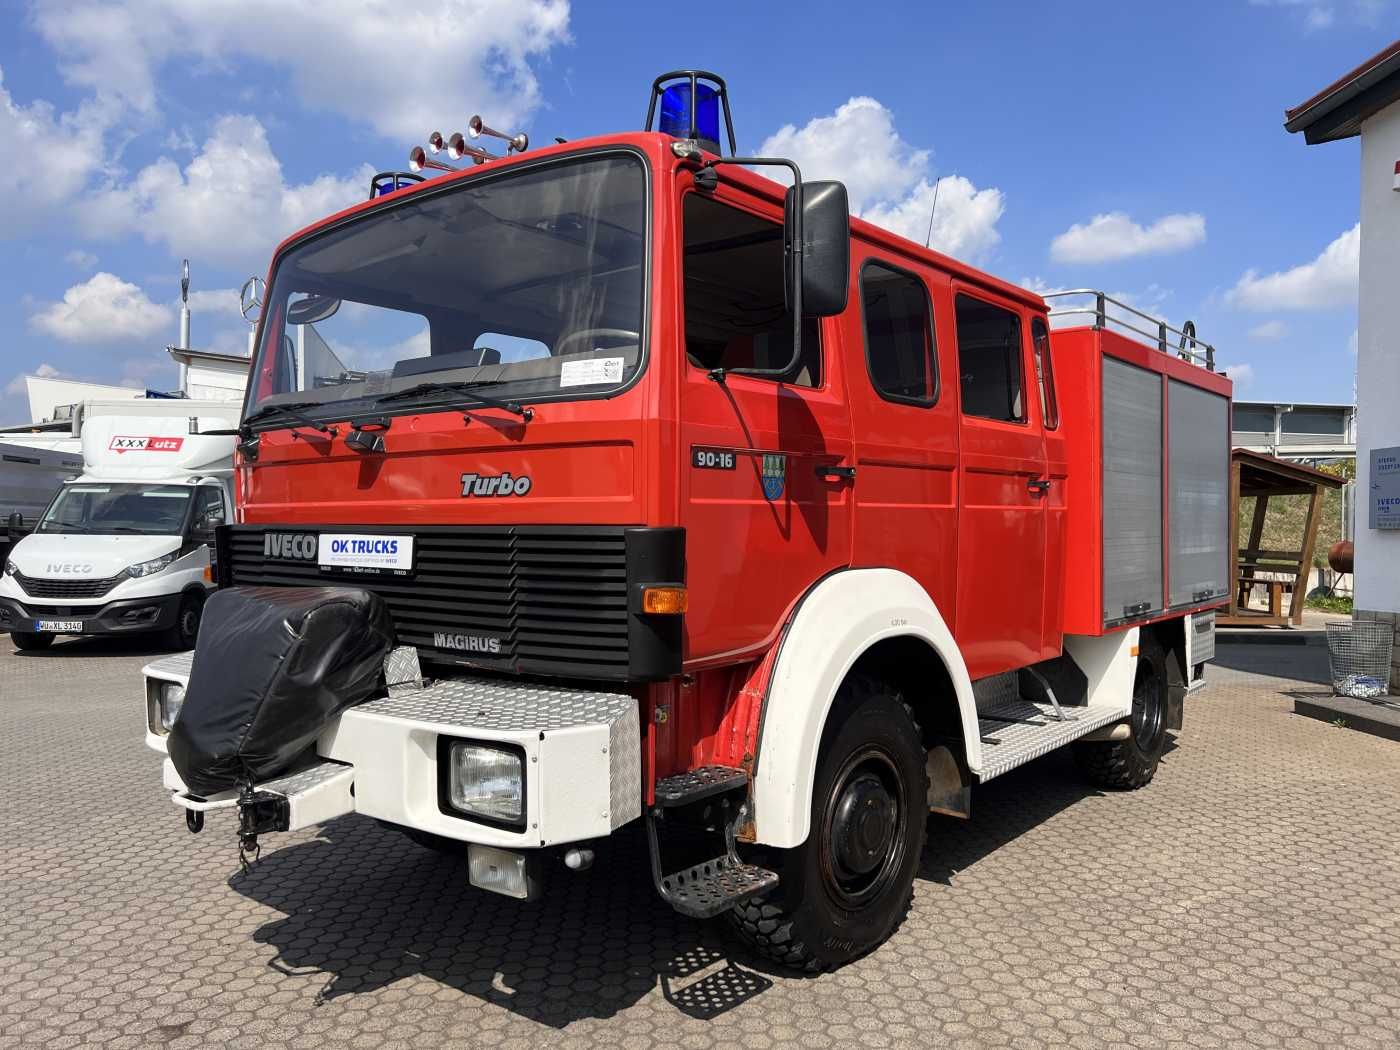 Fahrzeugabbildung Iveco 90-16 AW 4x4 LF8 Feuerwehr Standheizung 9 Sitze